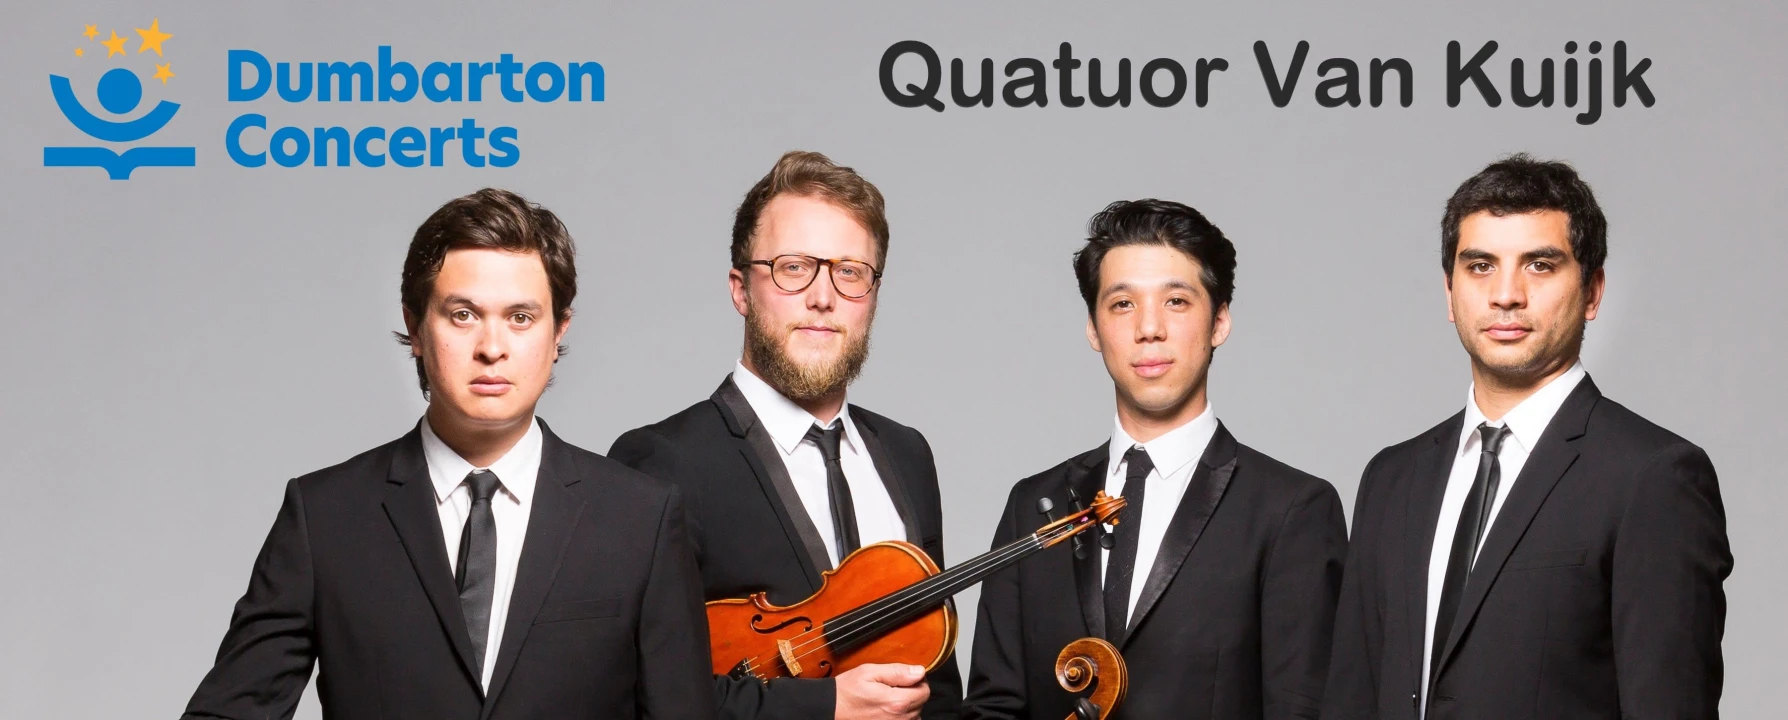 Quatuor van Kuijk: What to expect - 1